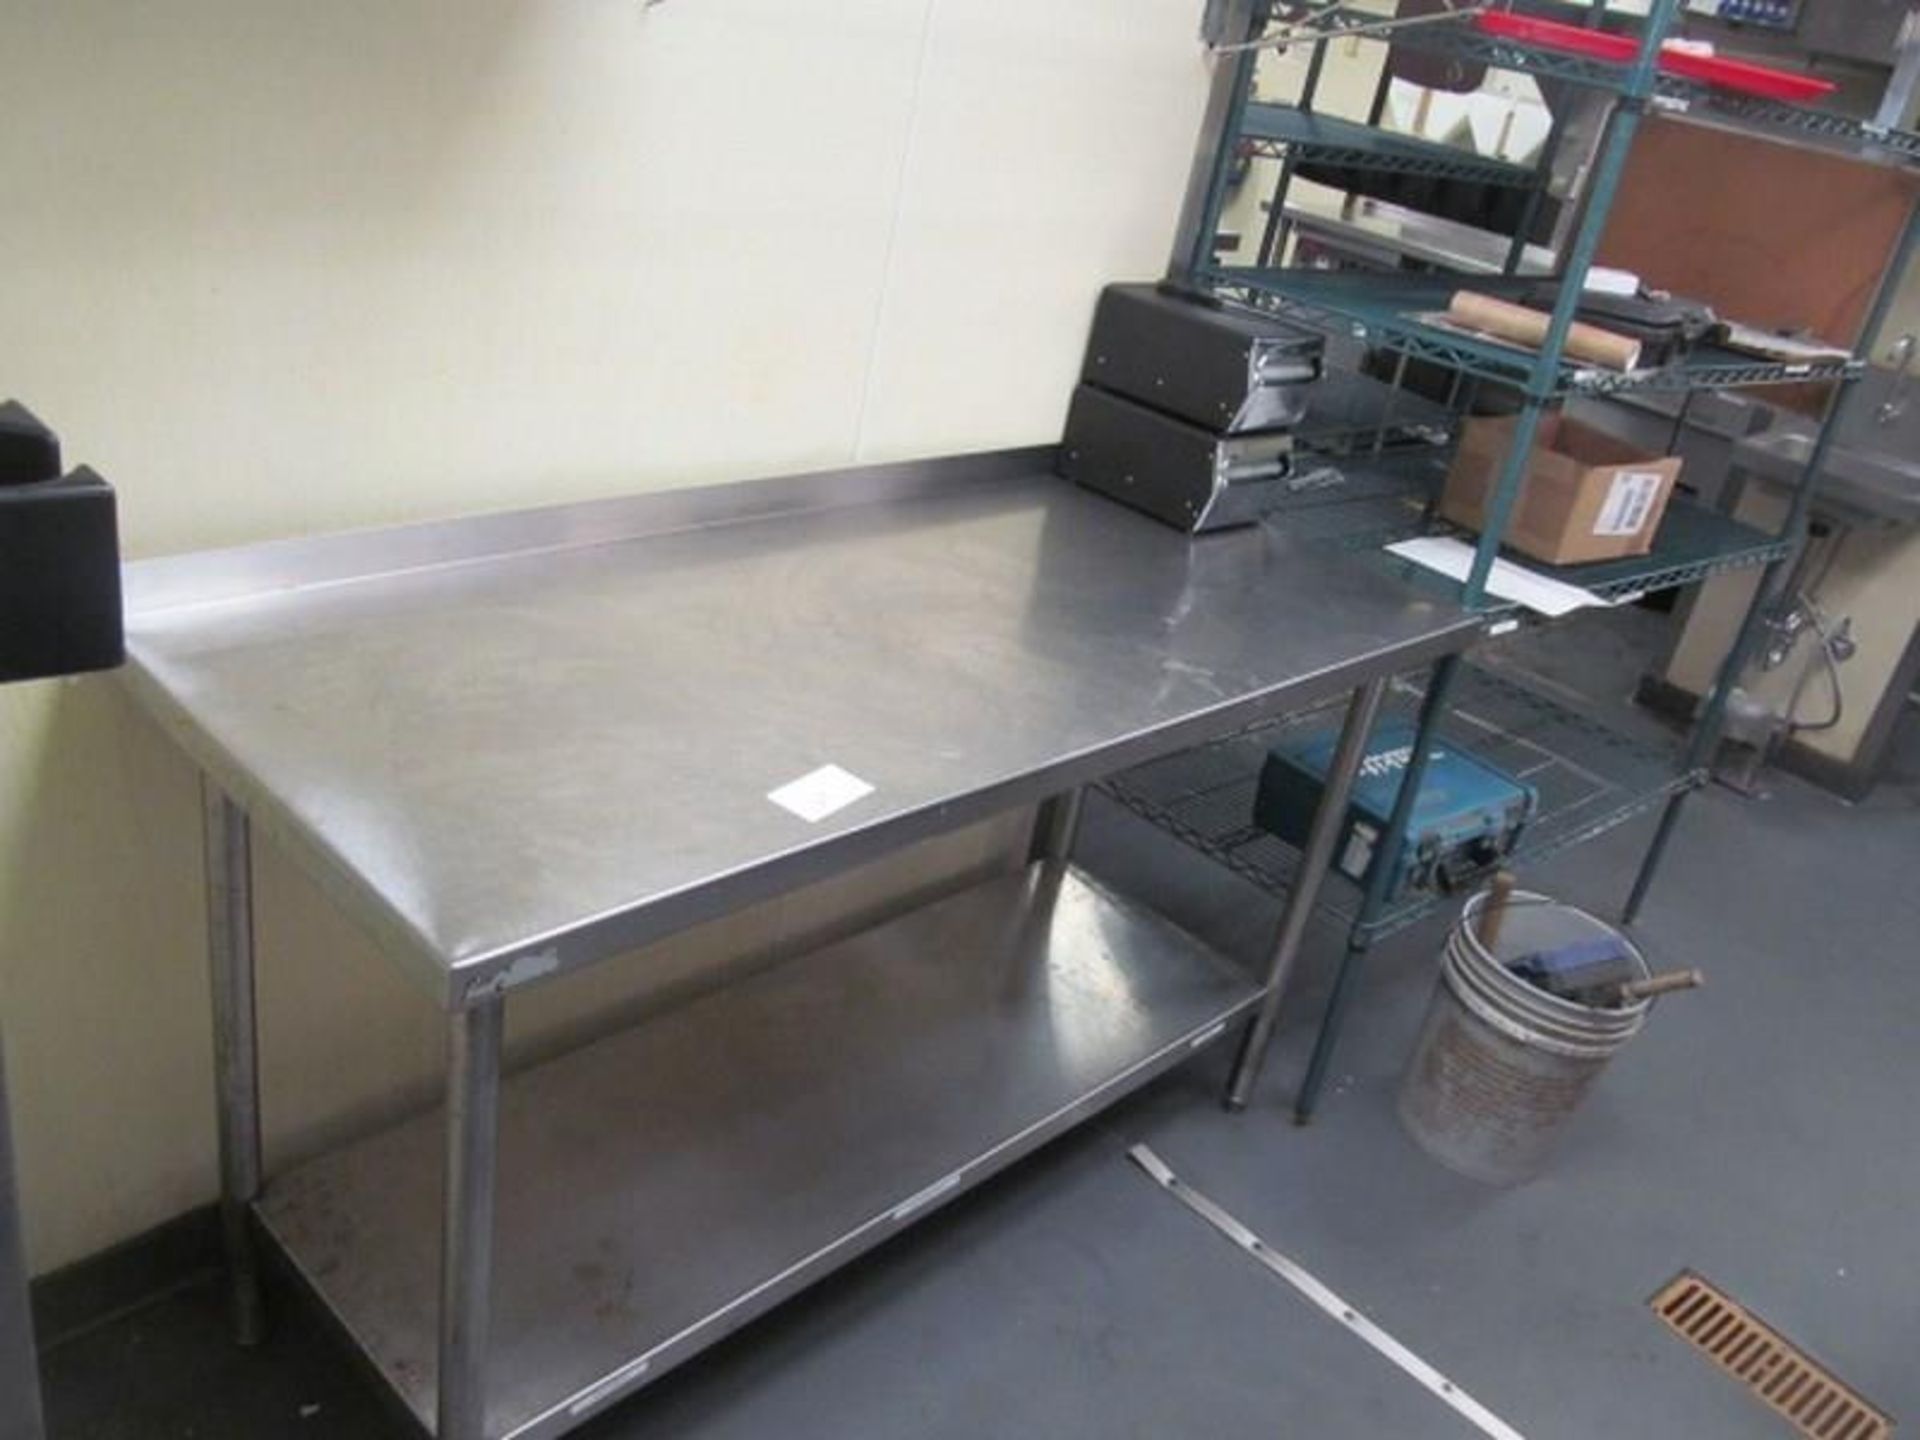 6' Stainless Steel Prep Table w/ Undershelf - Image 2 of 2